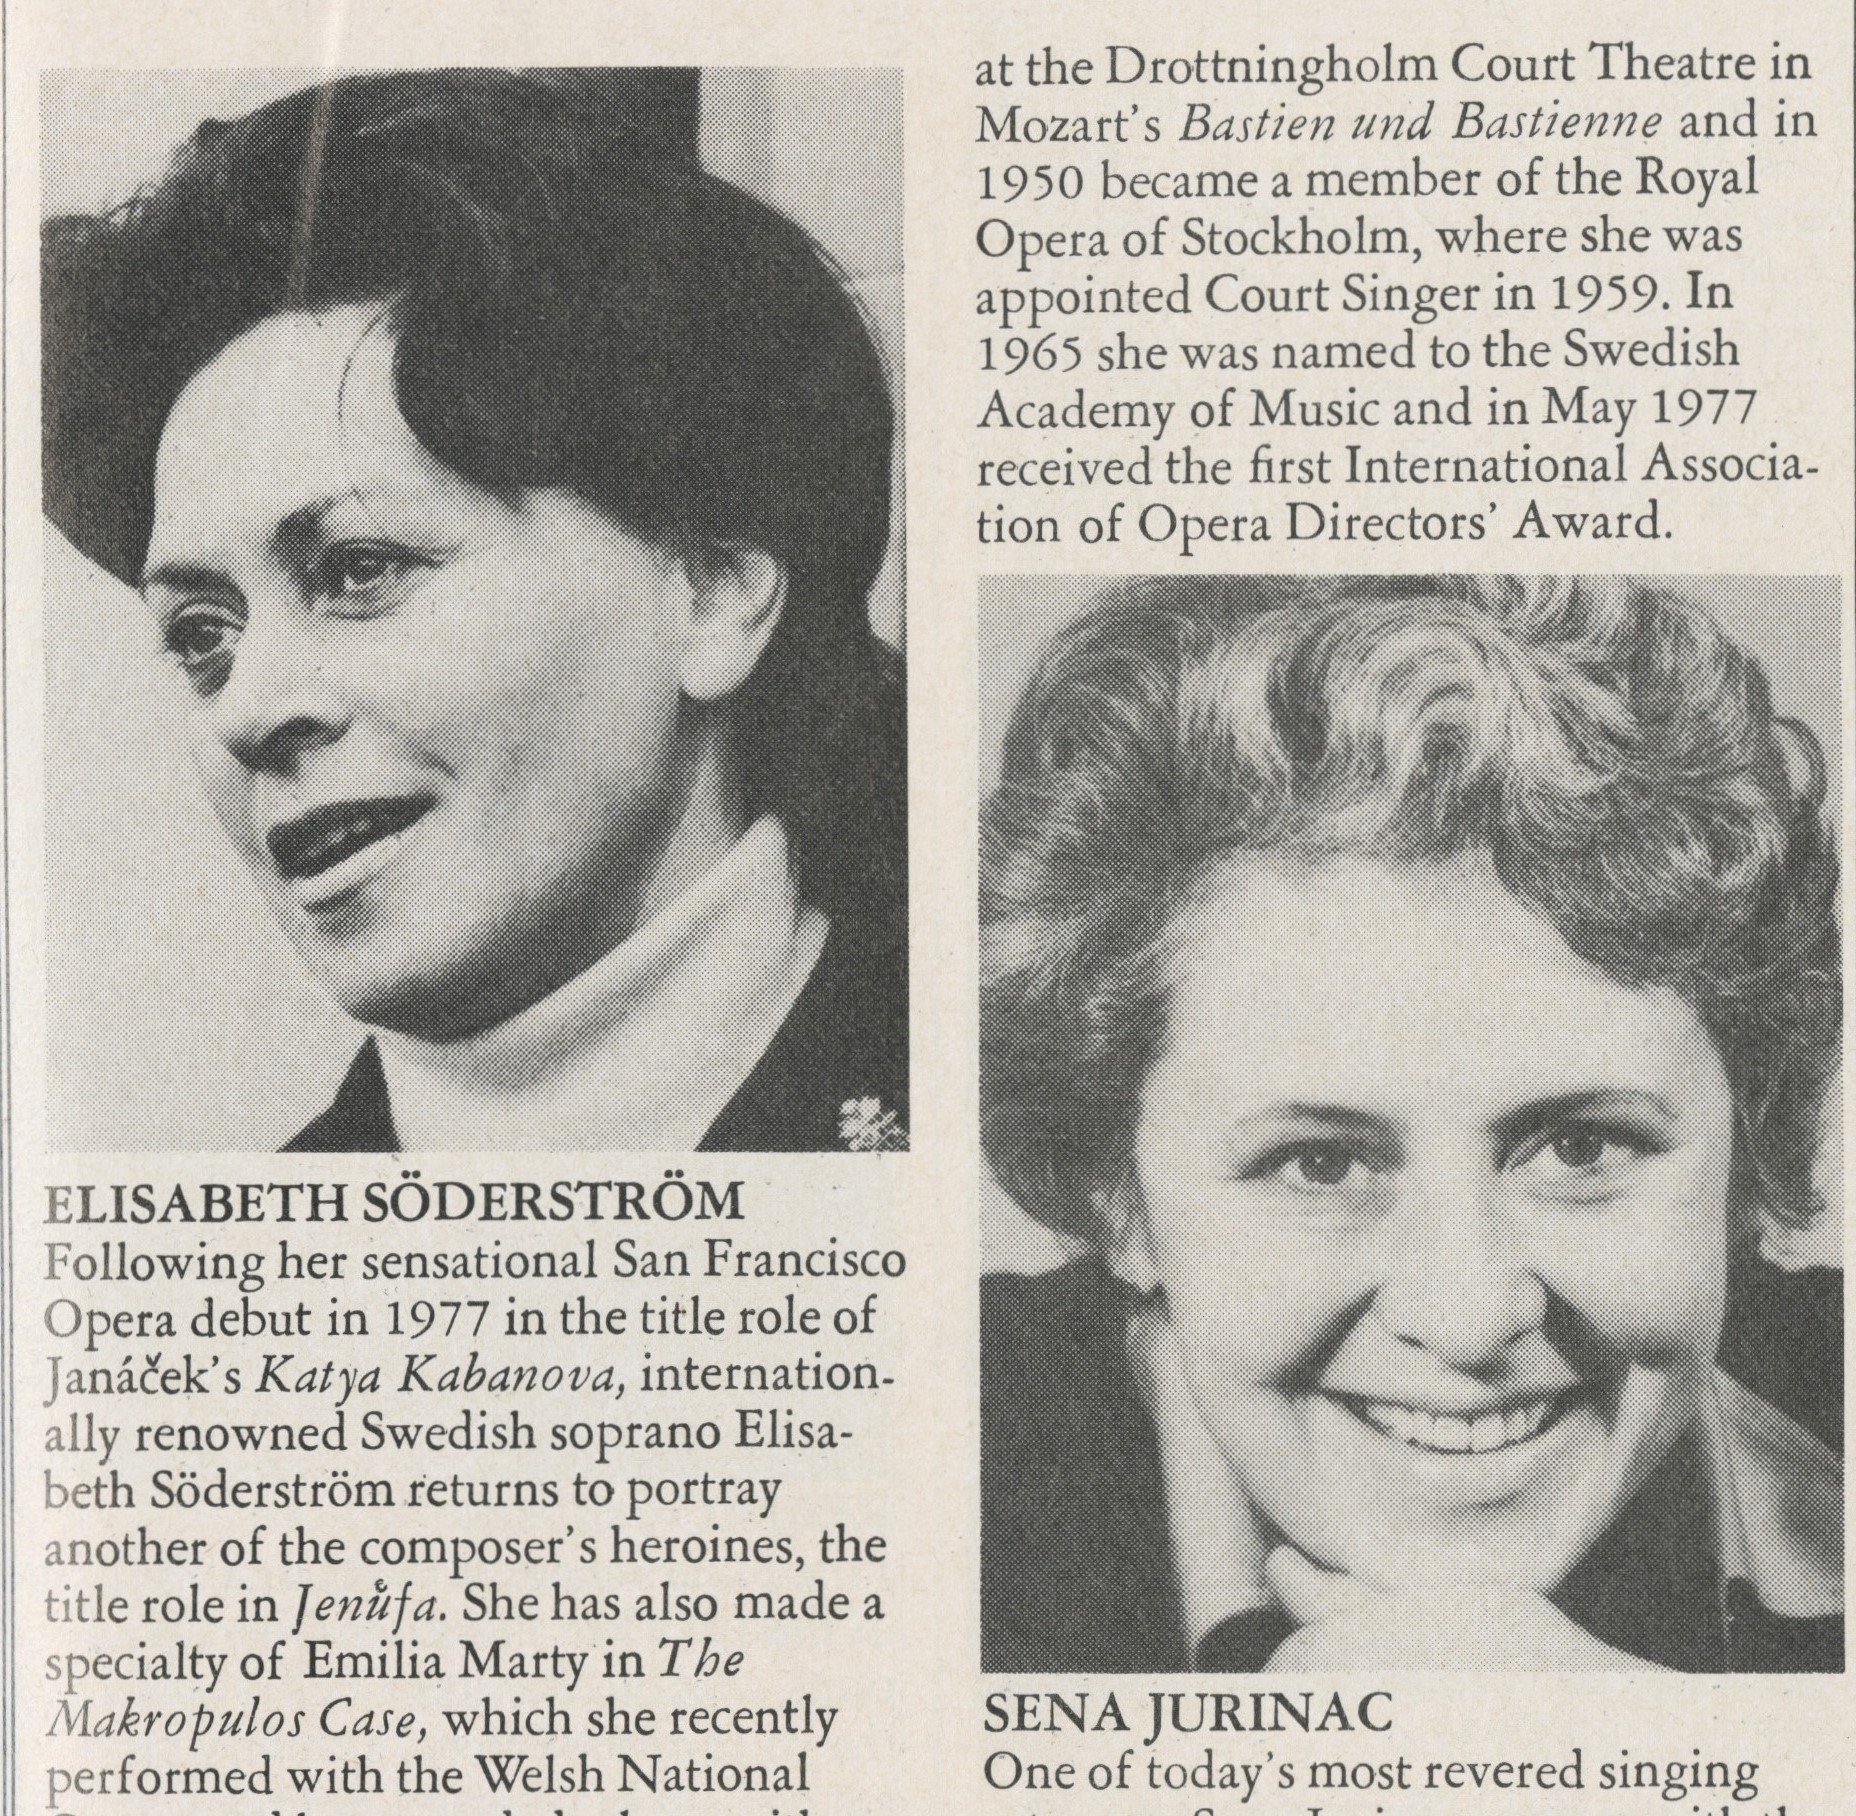 Elisabeth Söderström and Sena Jurinac 1980 newspaper clipping